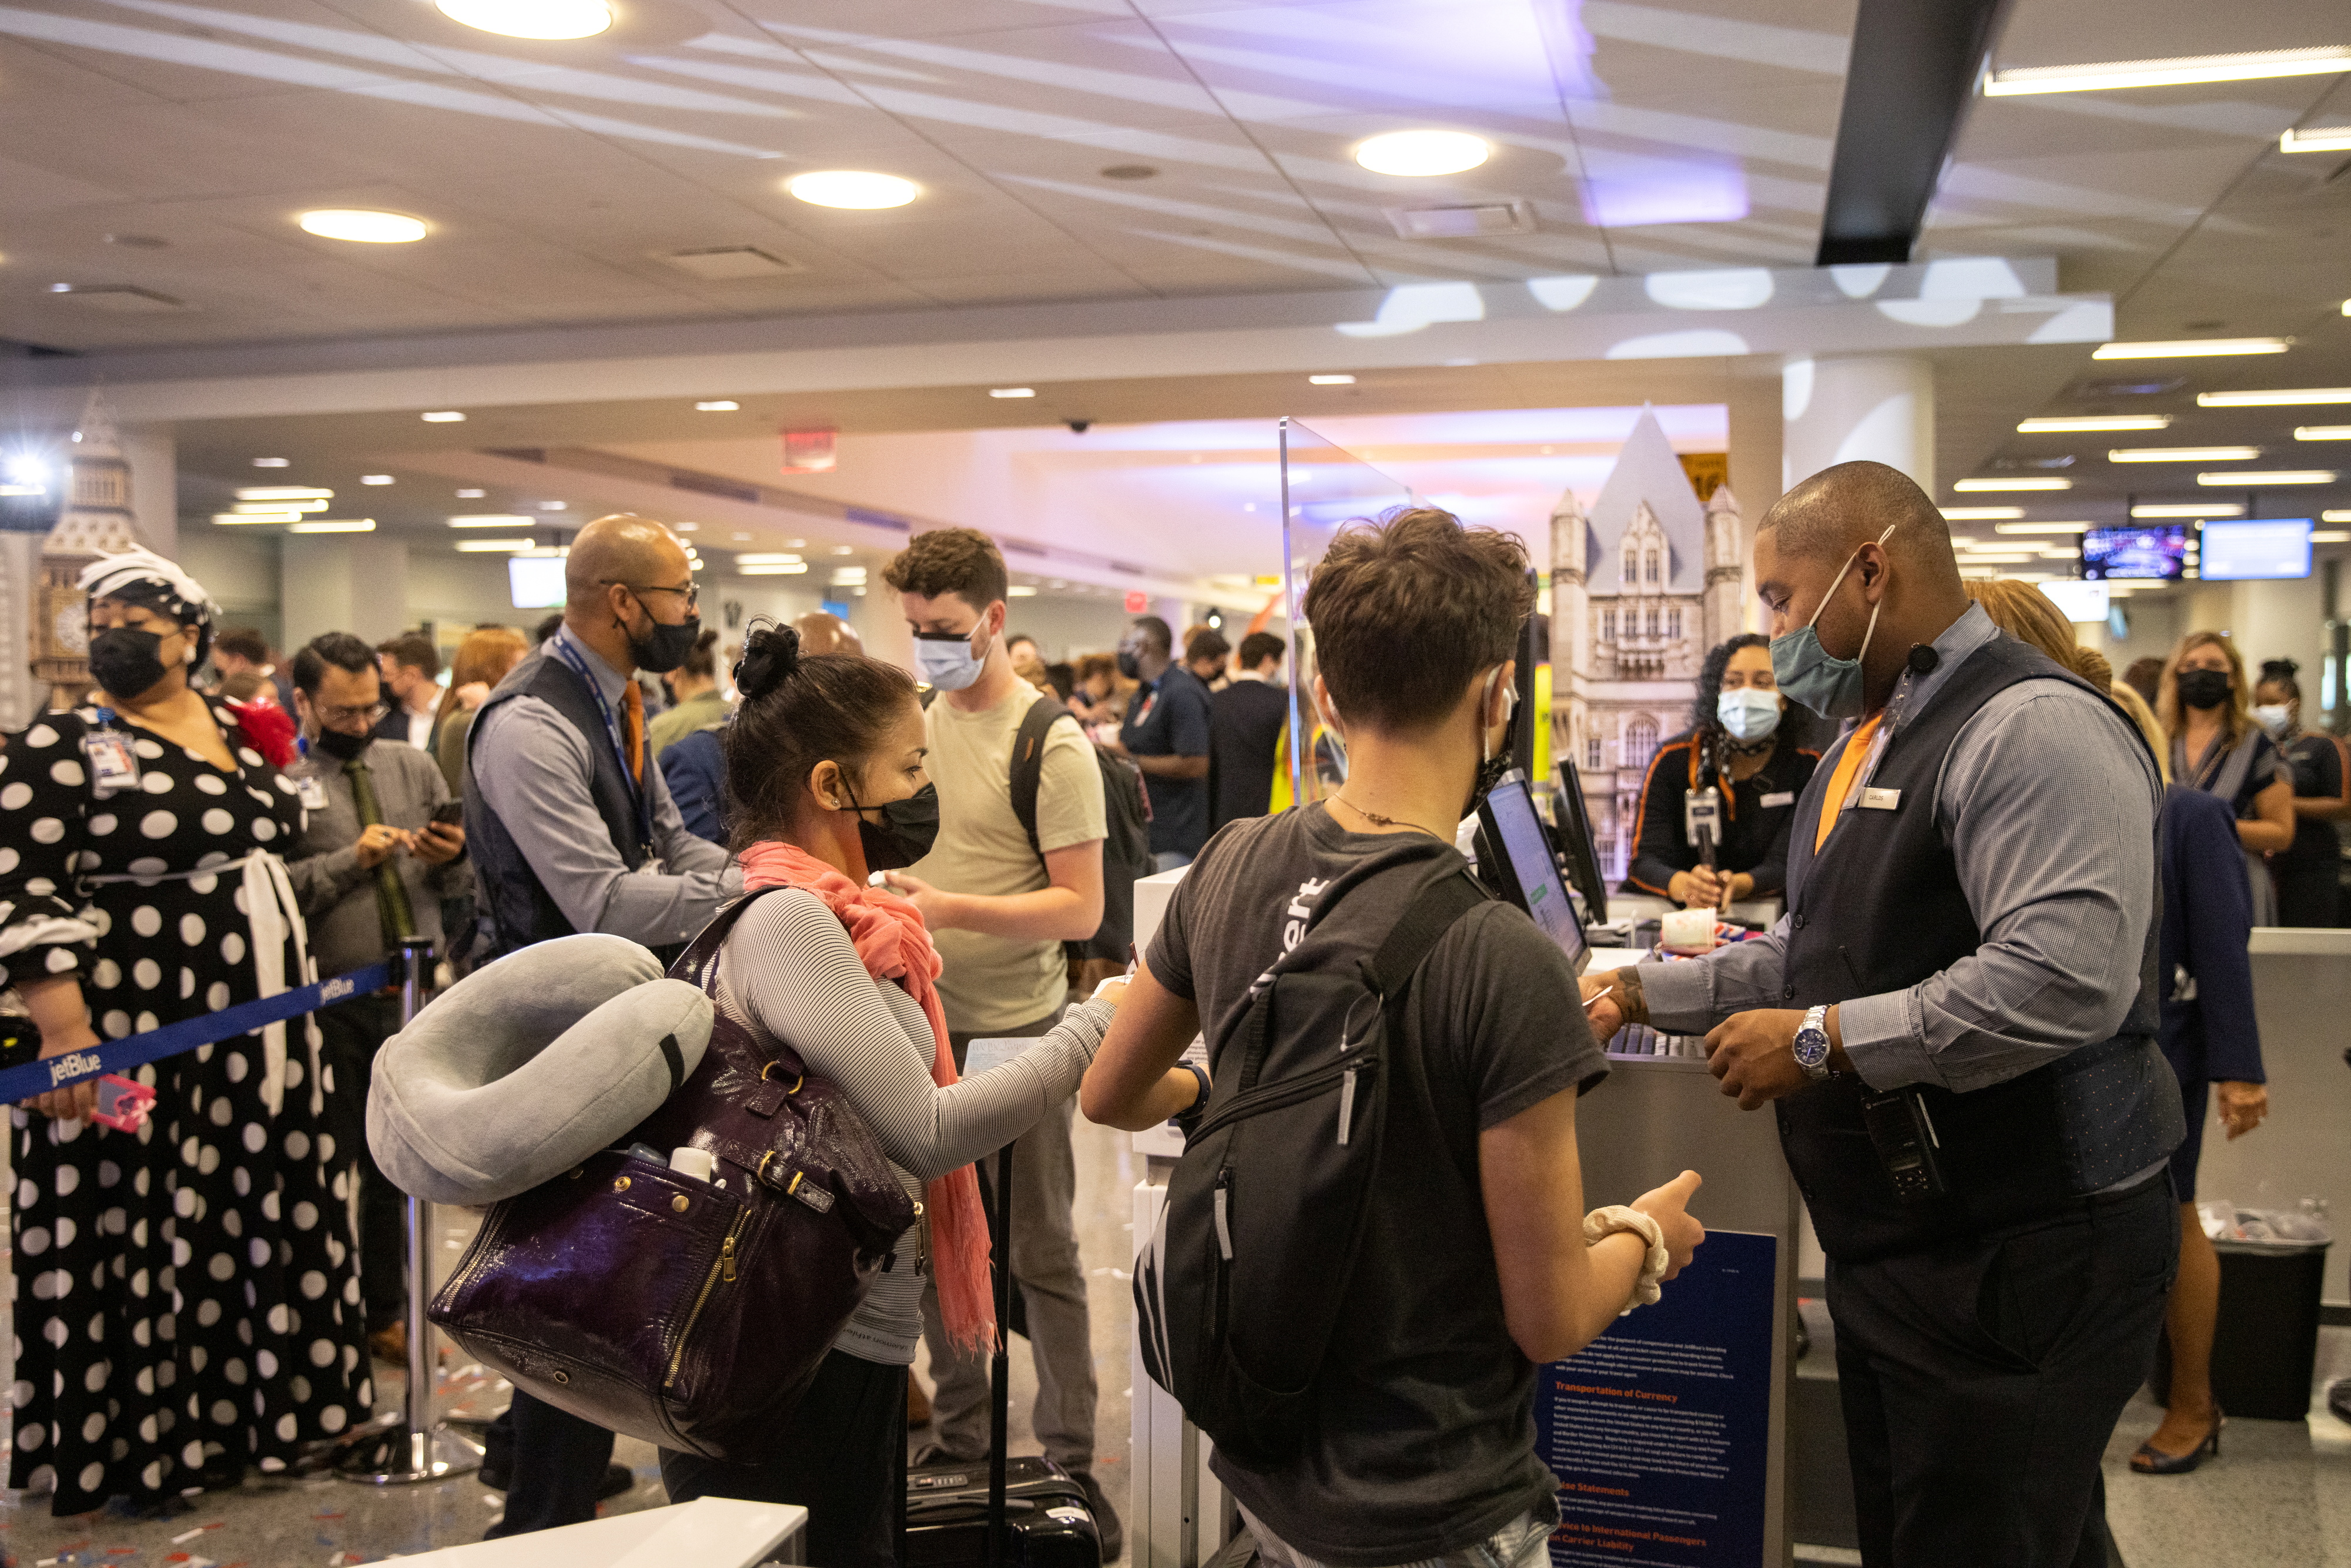 Los pasajeros muestran sus pasaportes antes de un vuelo en el aeropuerto internacional JFK en el barrio de Queens de la ciudad de Nueva York, Nueva York, Estados Unidos, 11 de agosto de 2021. REUTERS/Jeenah Moon